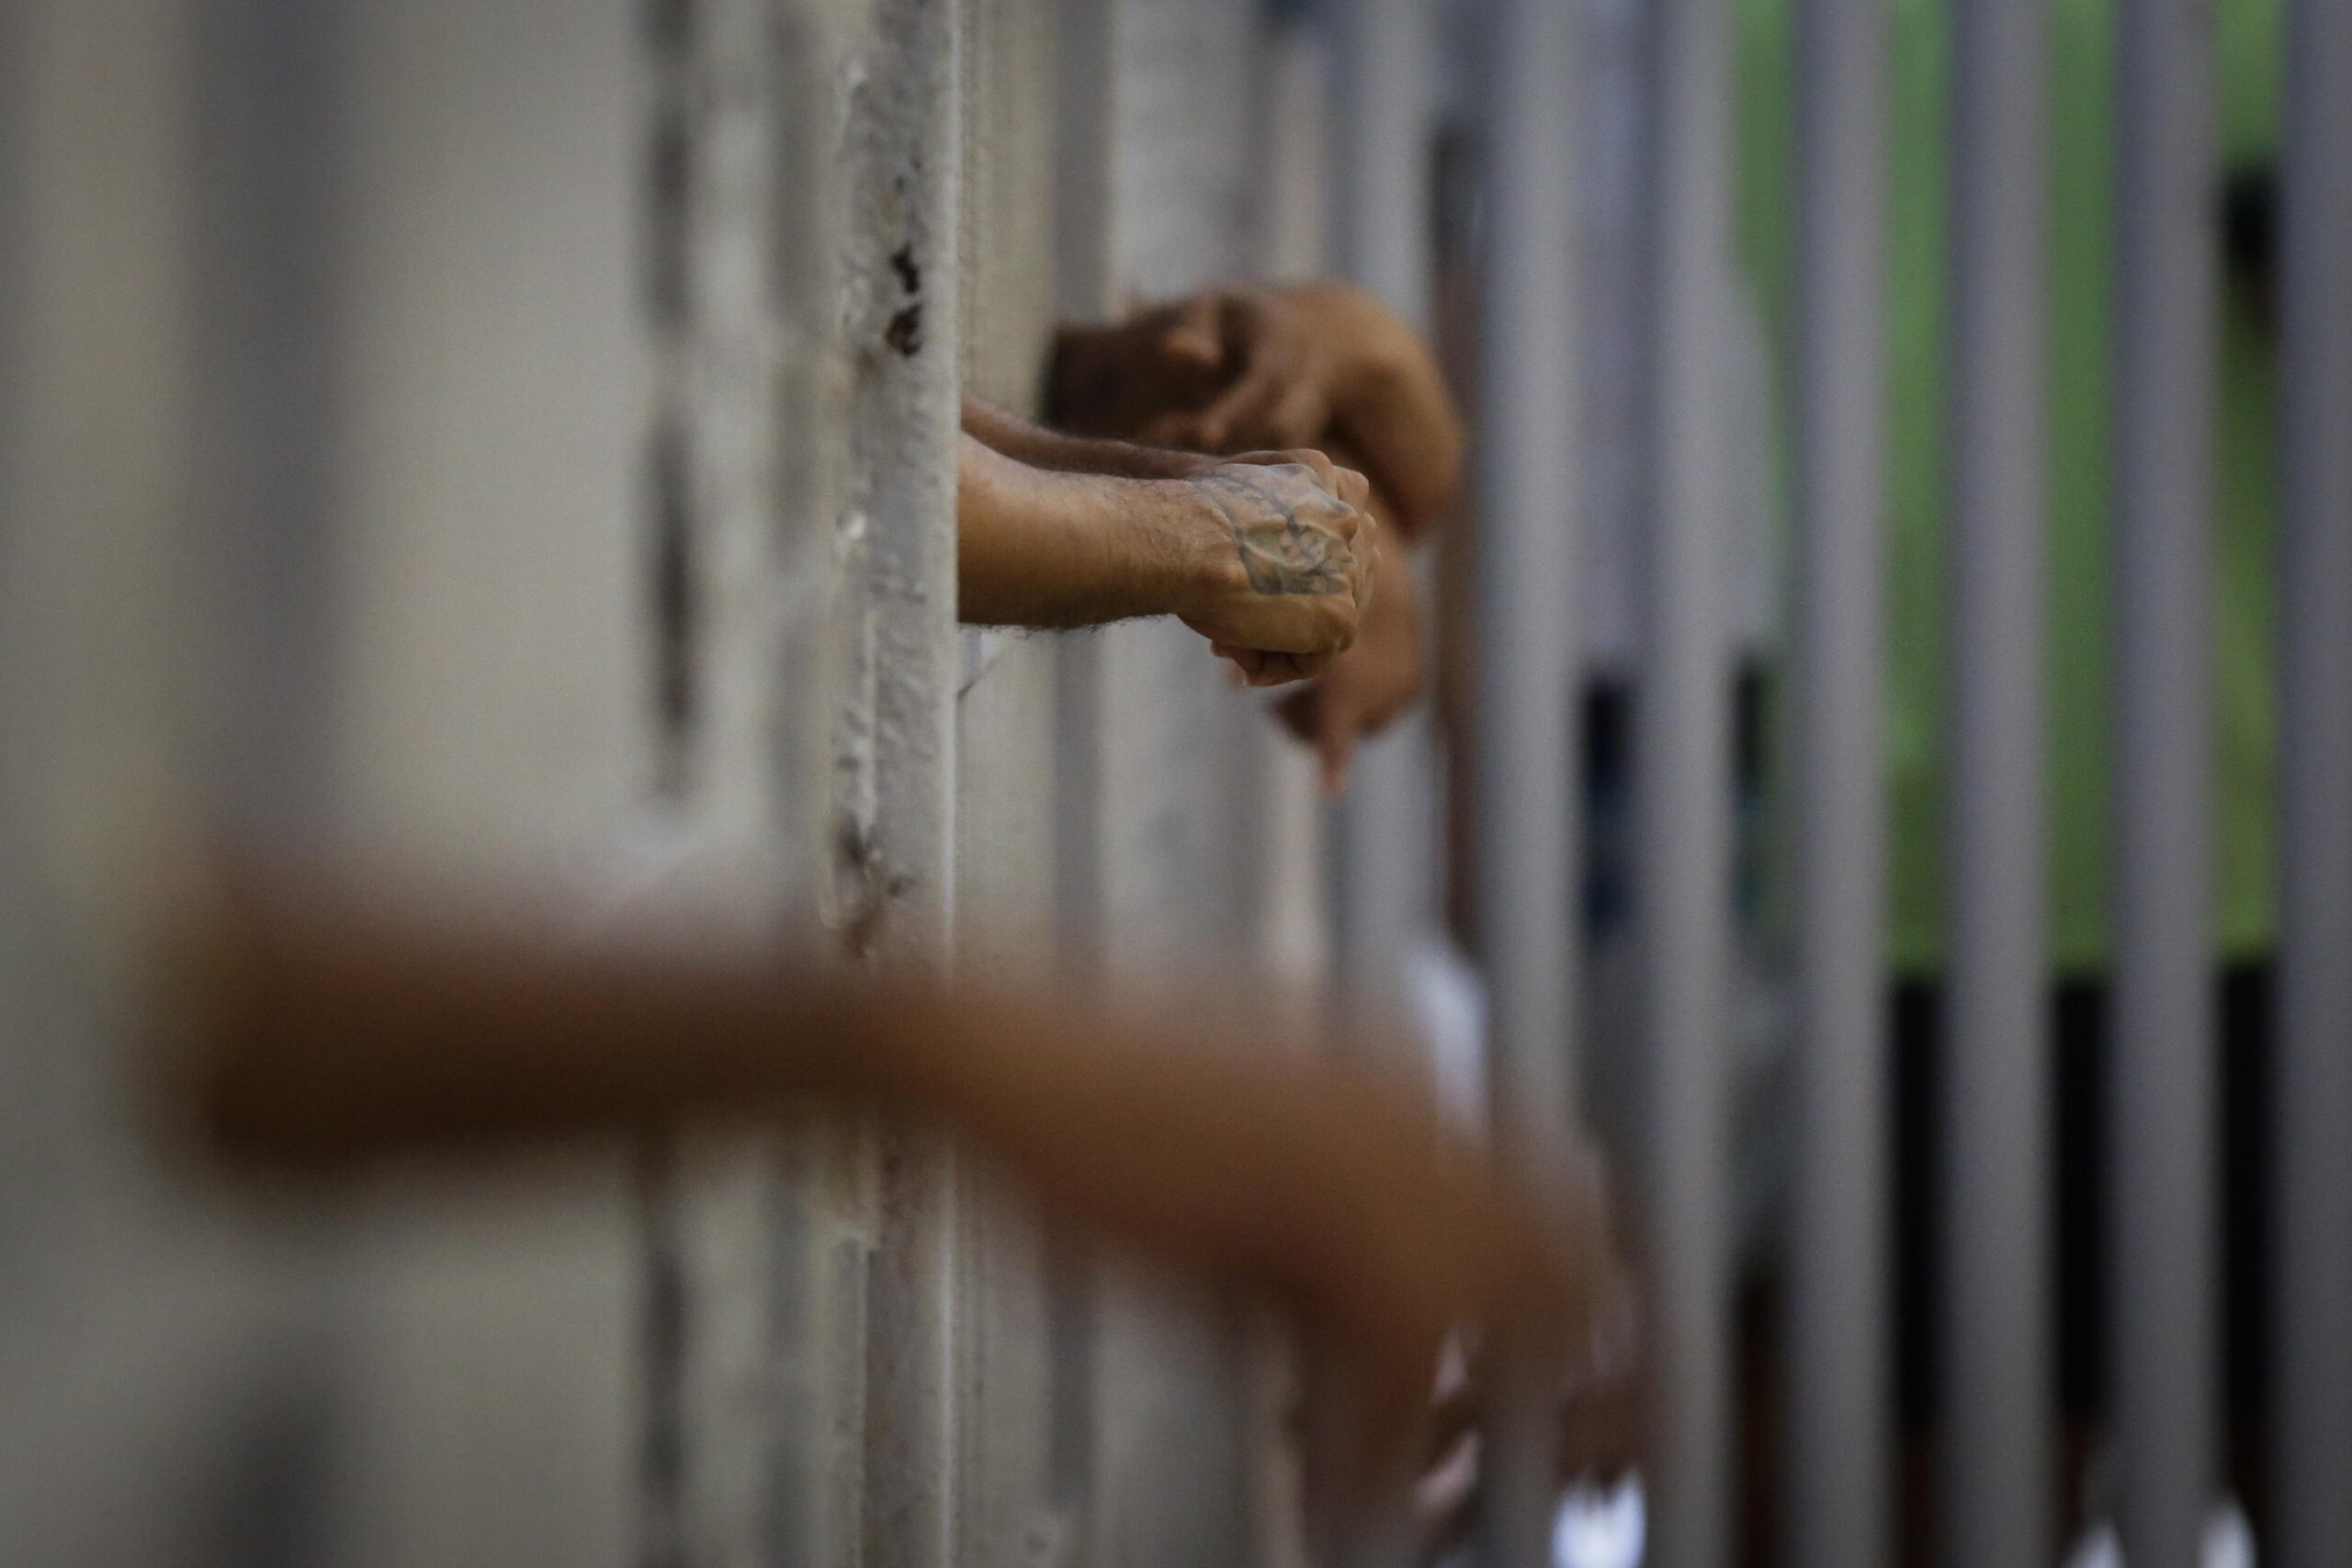 Carceri sovraffolate, i deputati del Pd in visita a Regina Coeli: "Condizioni degradanti, servono interventi urgenti"